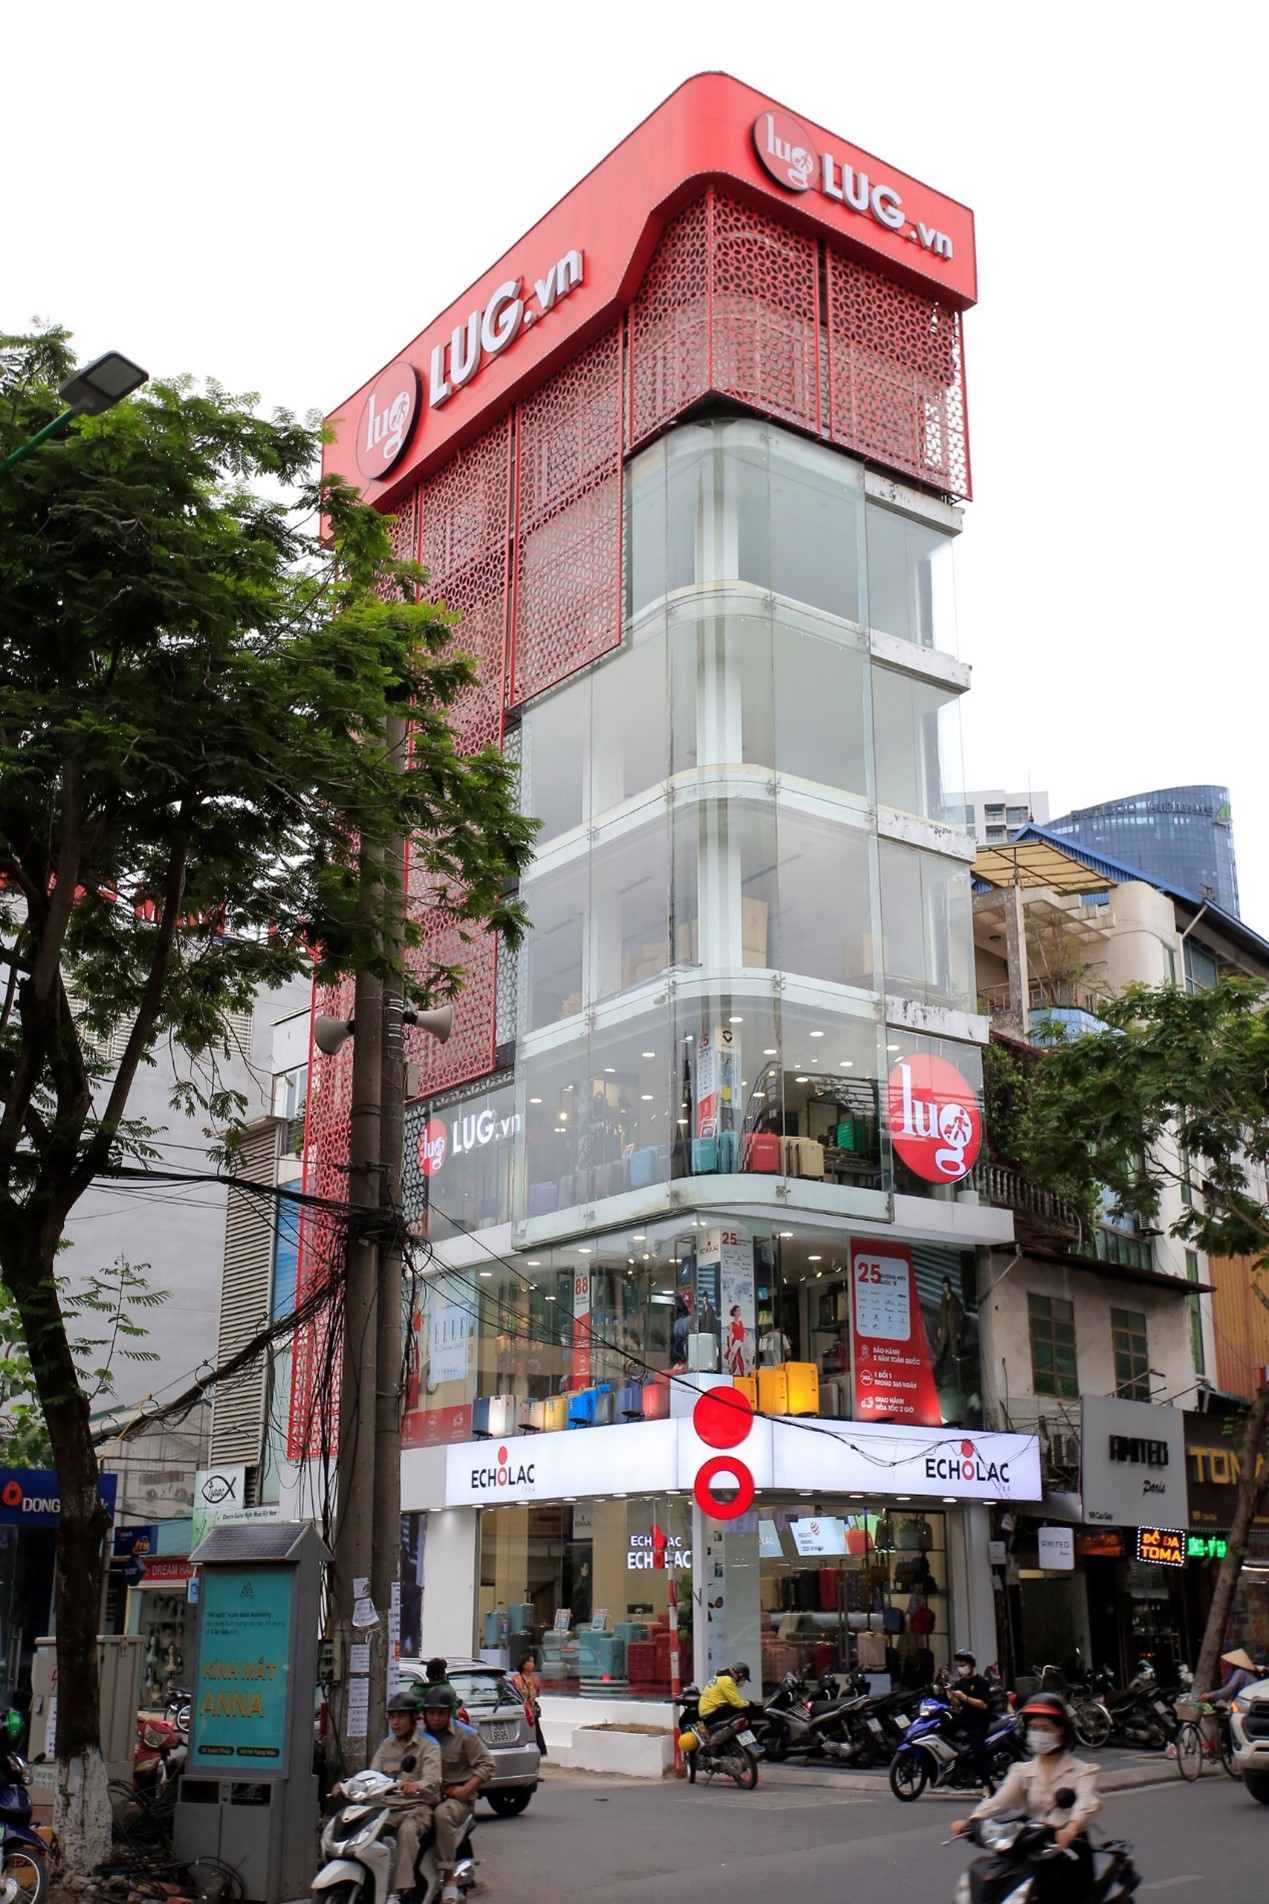 LUG.vn khai trương hai cửa hàng cao cấp tại Hà Nội và Sài Gòn - Ảnh 2.